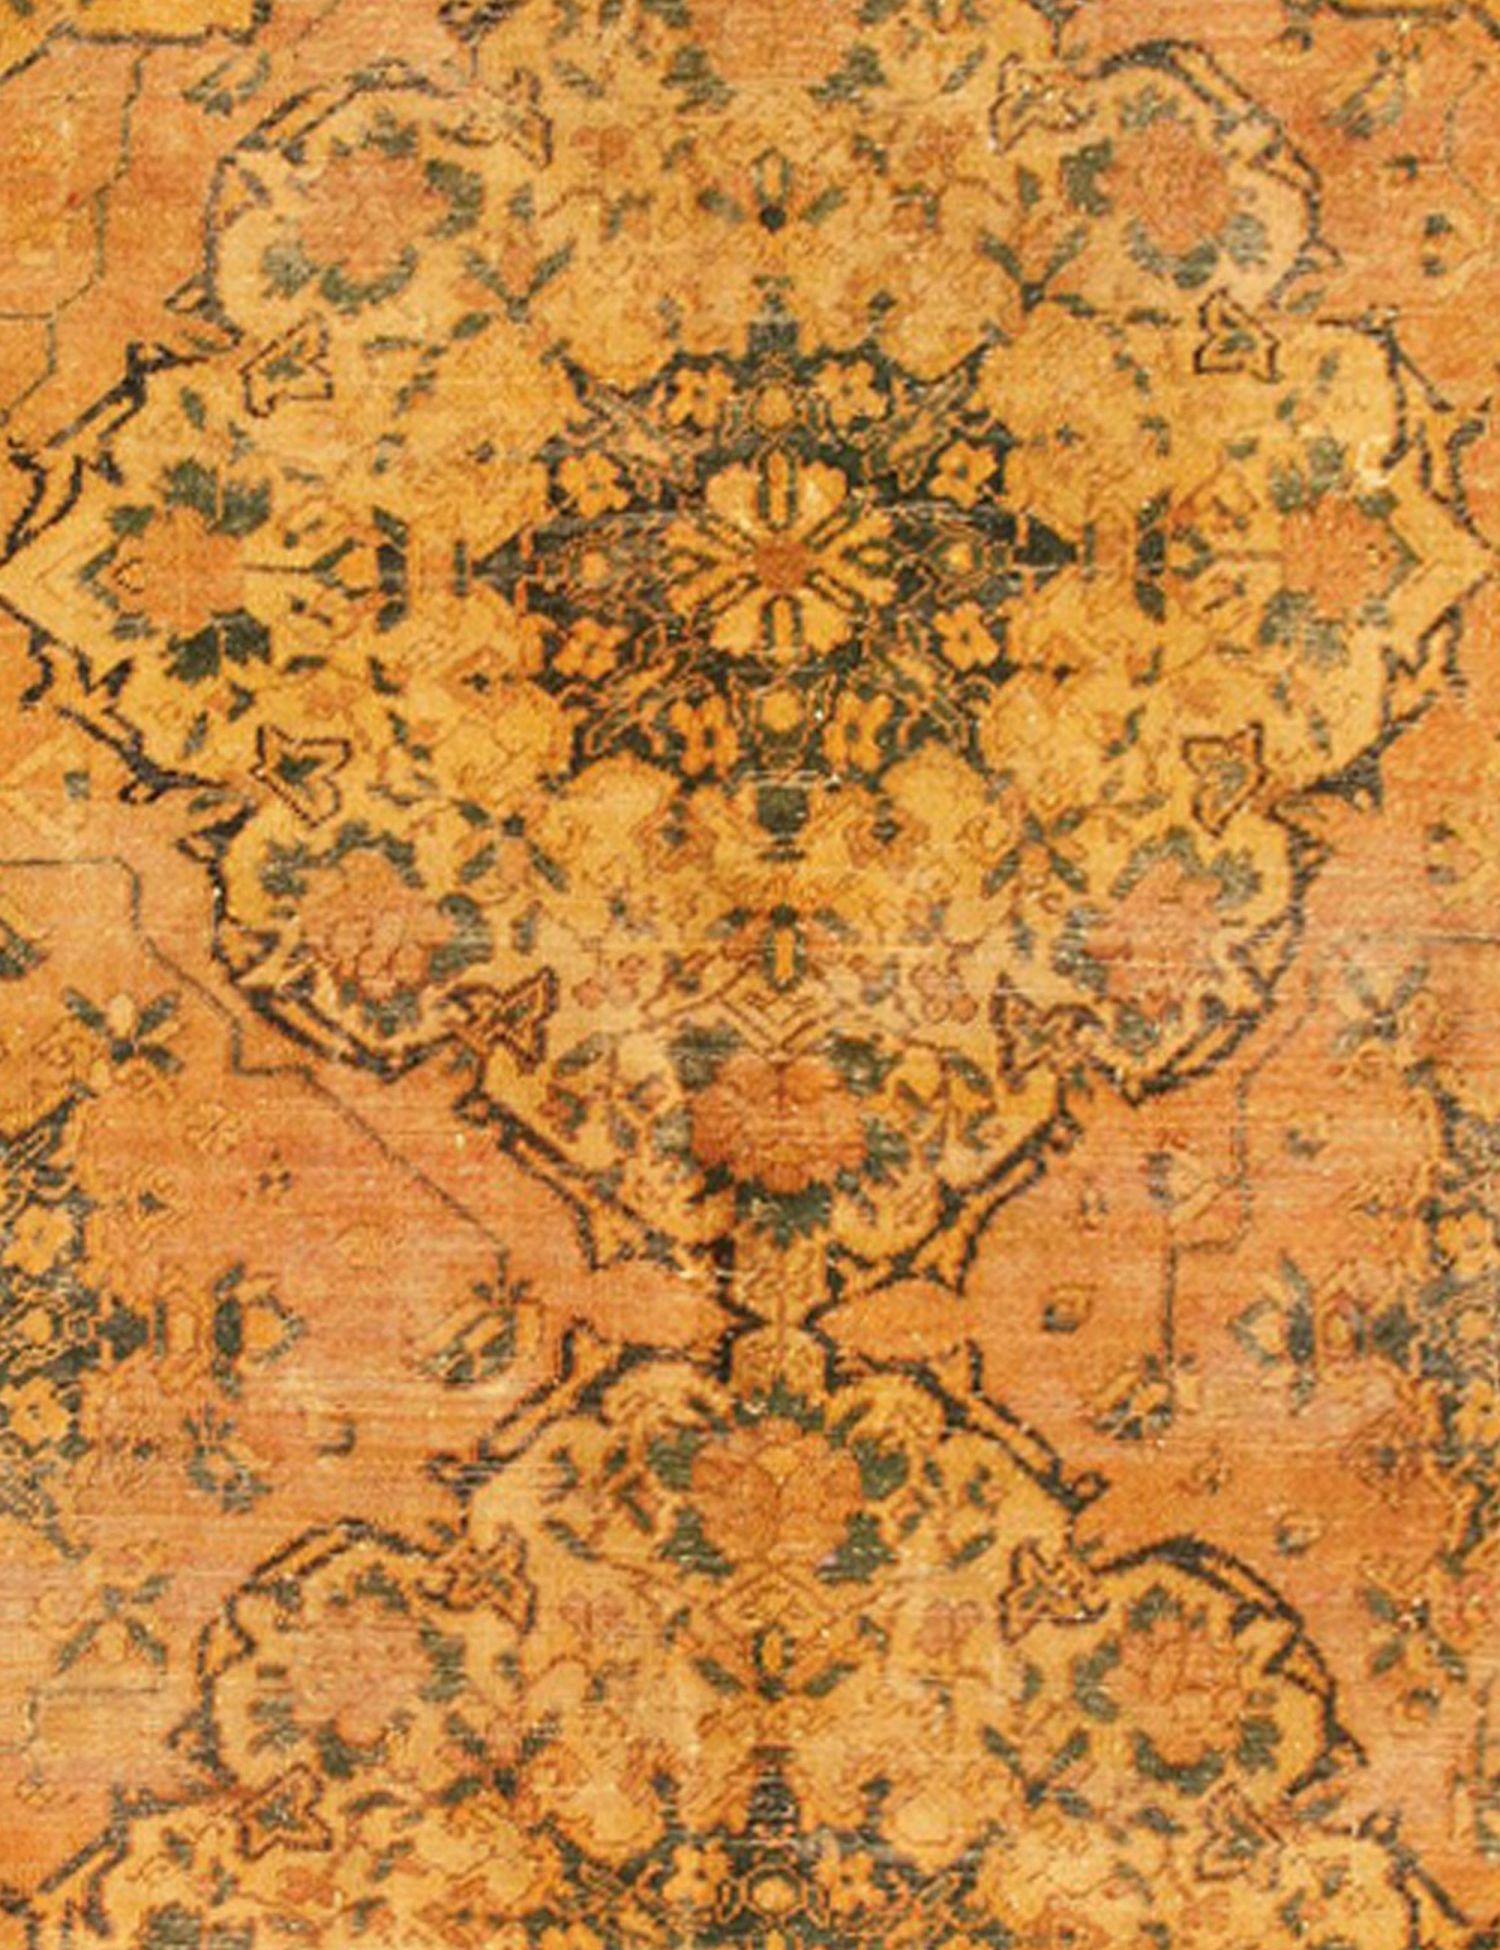 Persischer Vintage Teppich  gelb <br/>180 x 180 cm